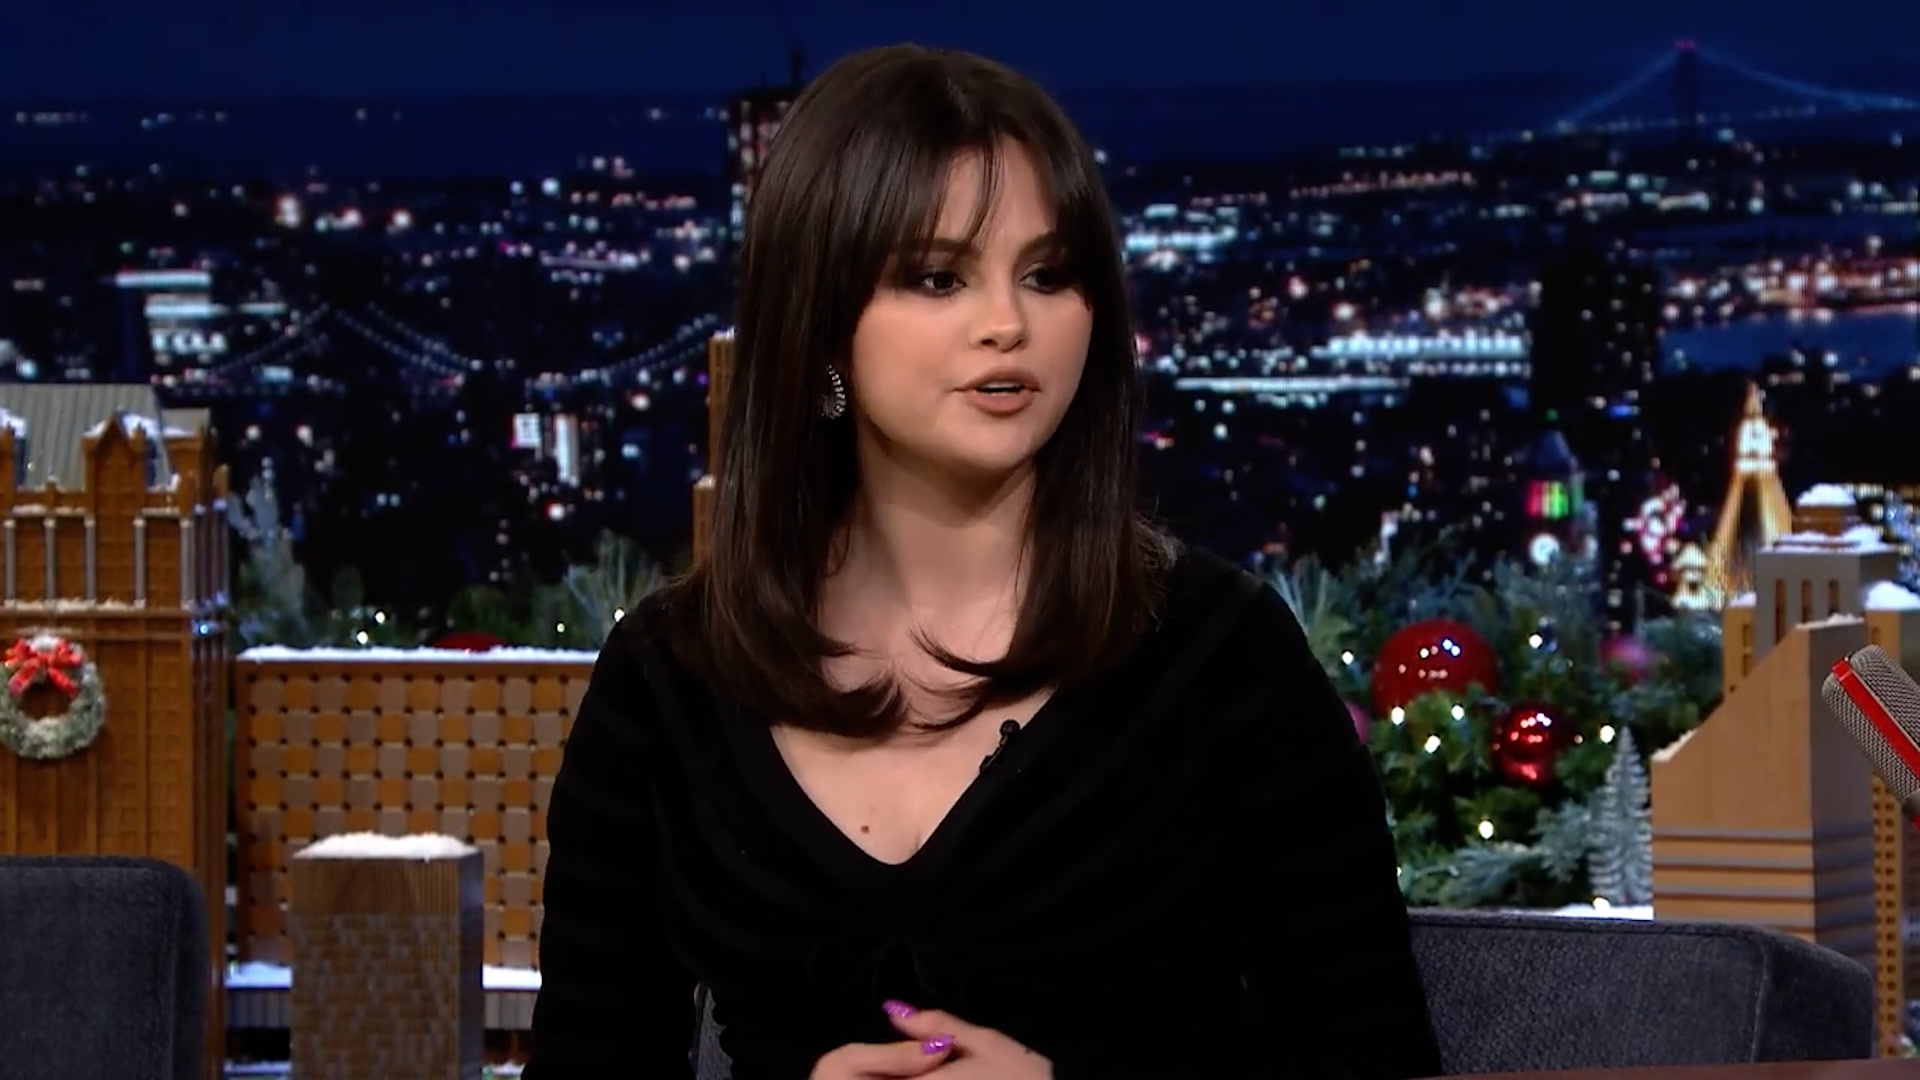 Francia Raisa Addresses Bullying amid Selena Gomez Social Media Drama